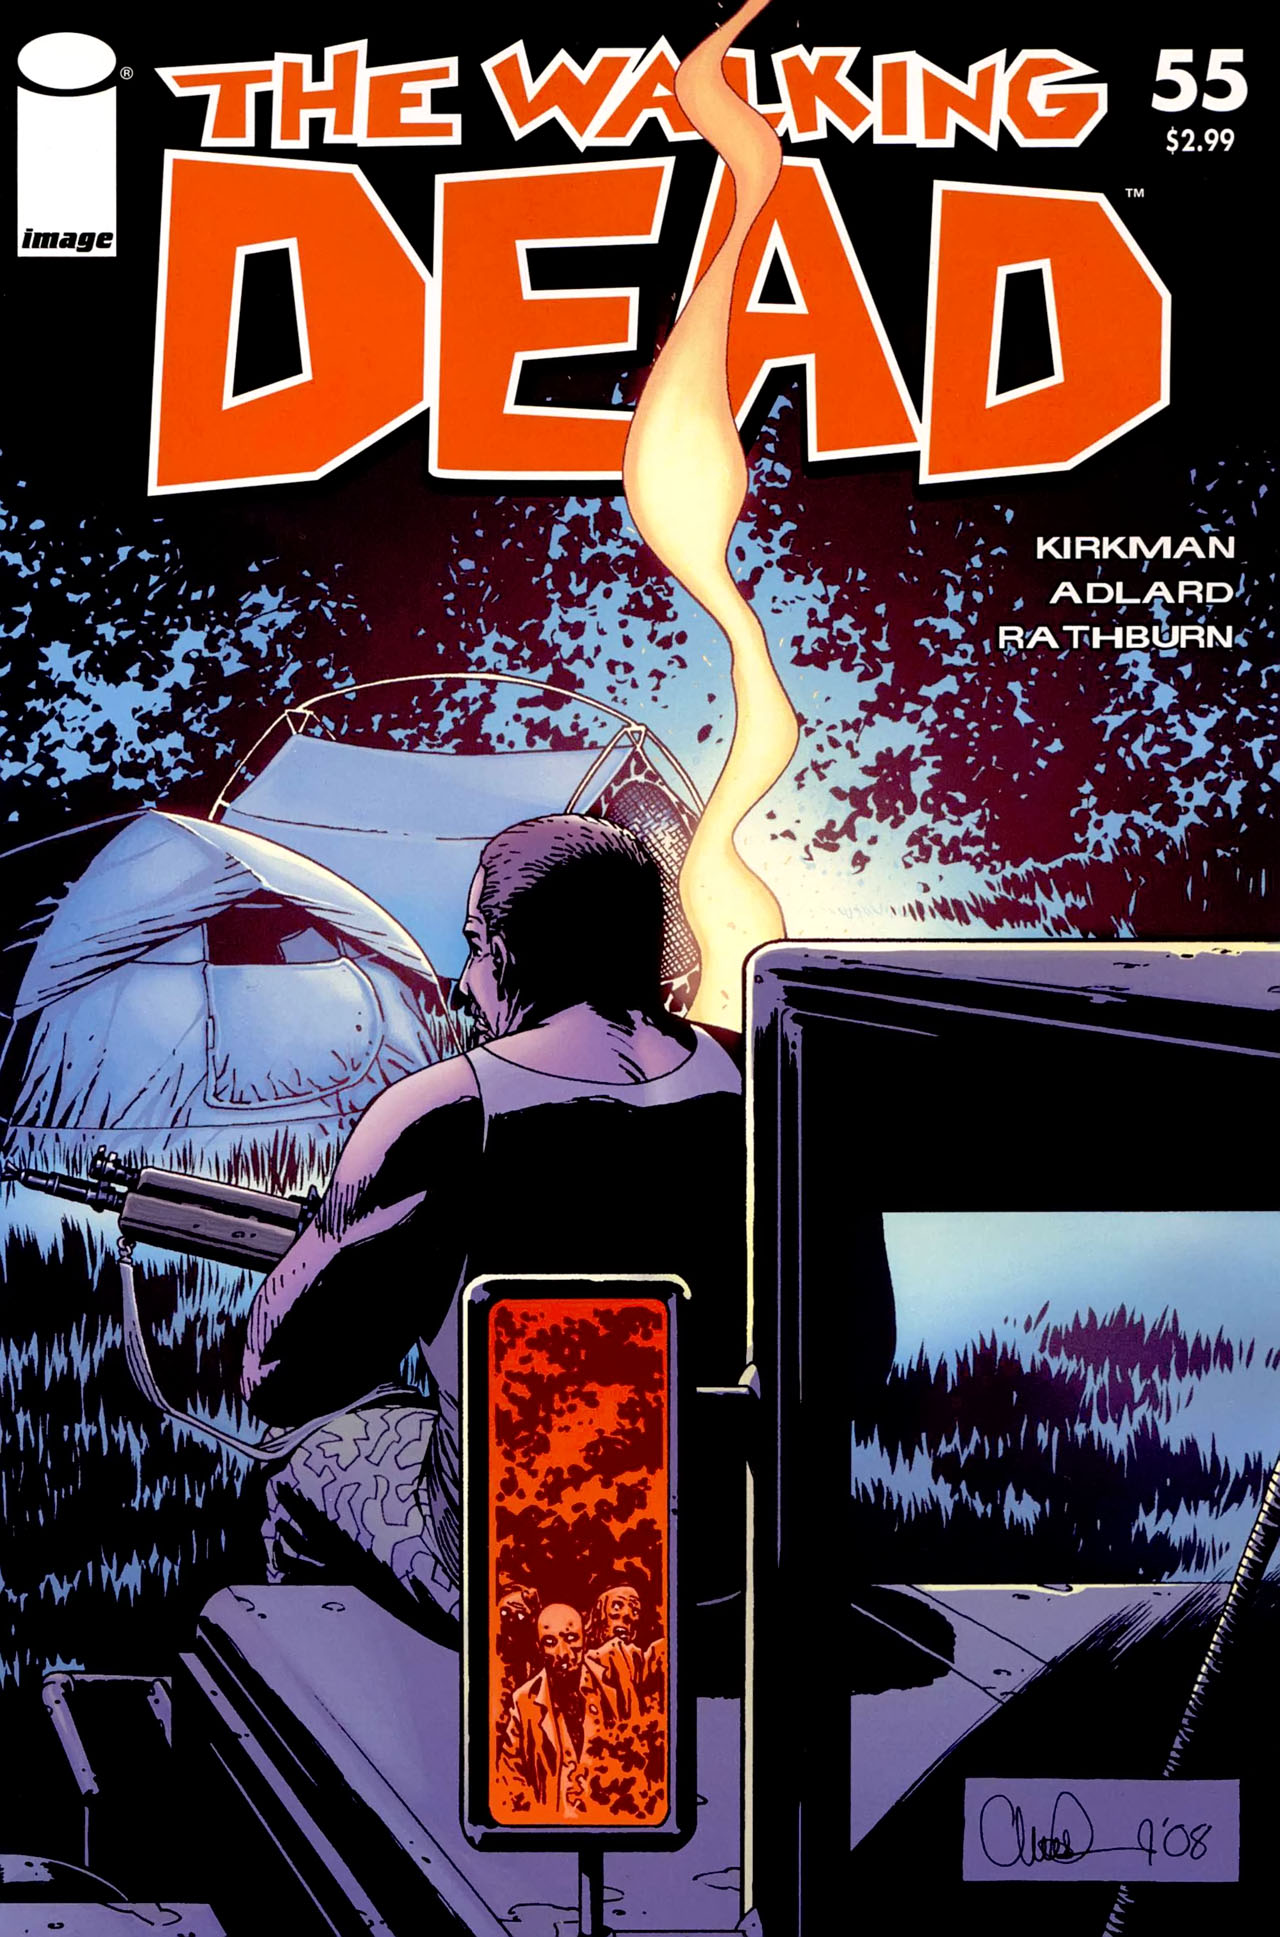 The Walking Dead Vol. 1 #55